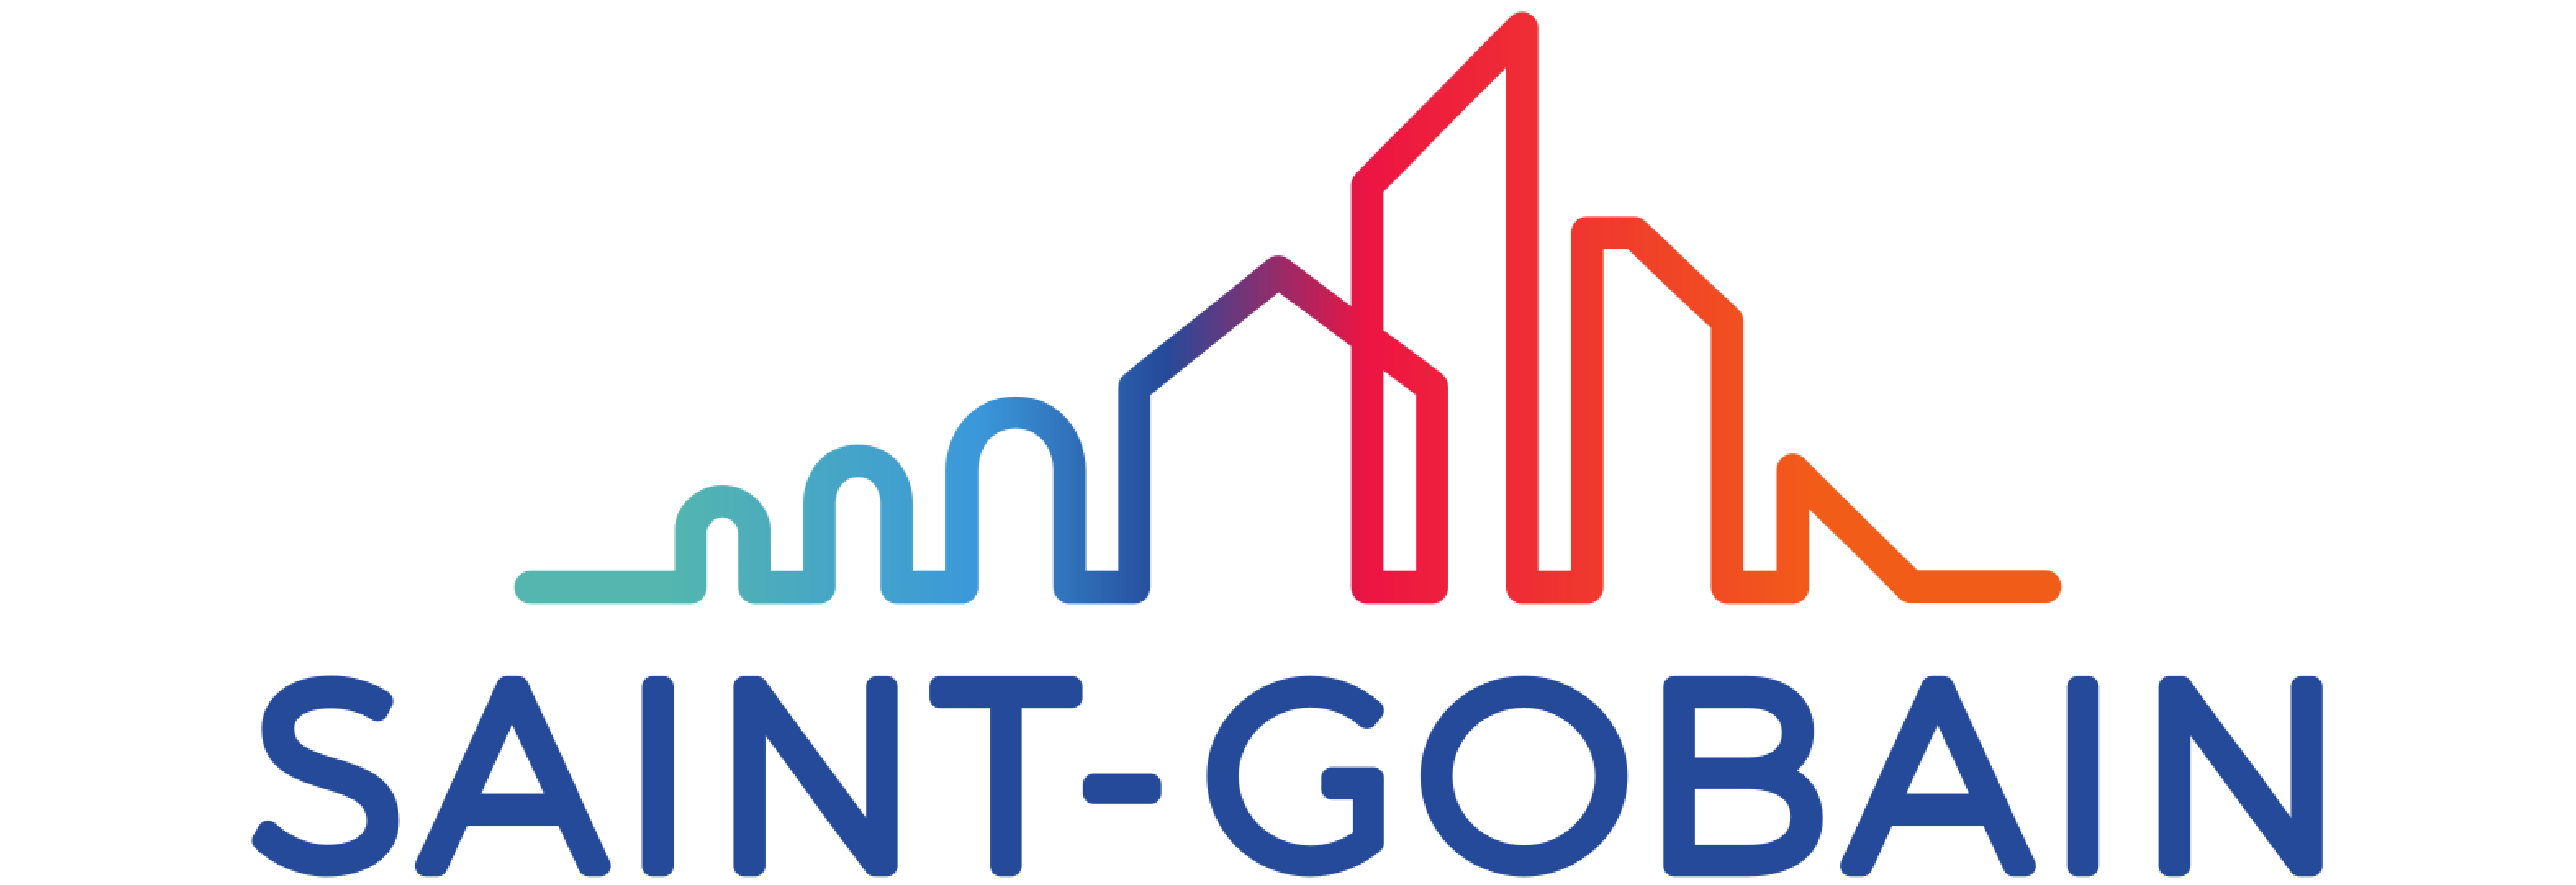 Saint Gobain logo partner of beSteel.